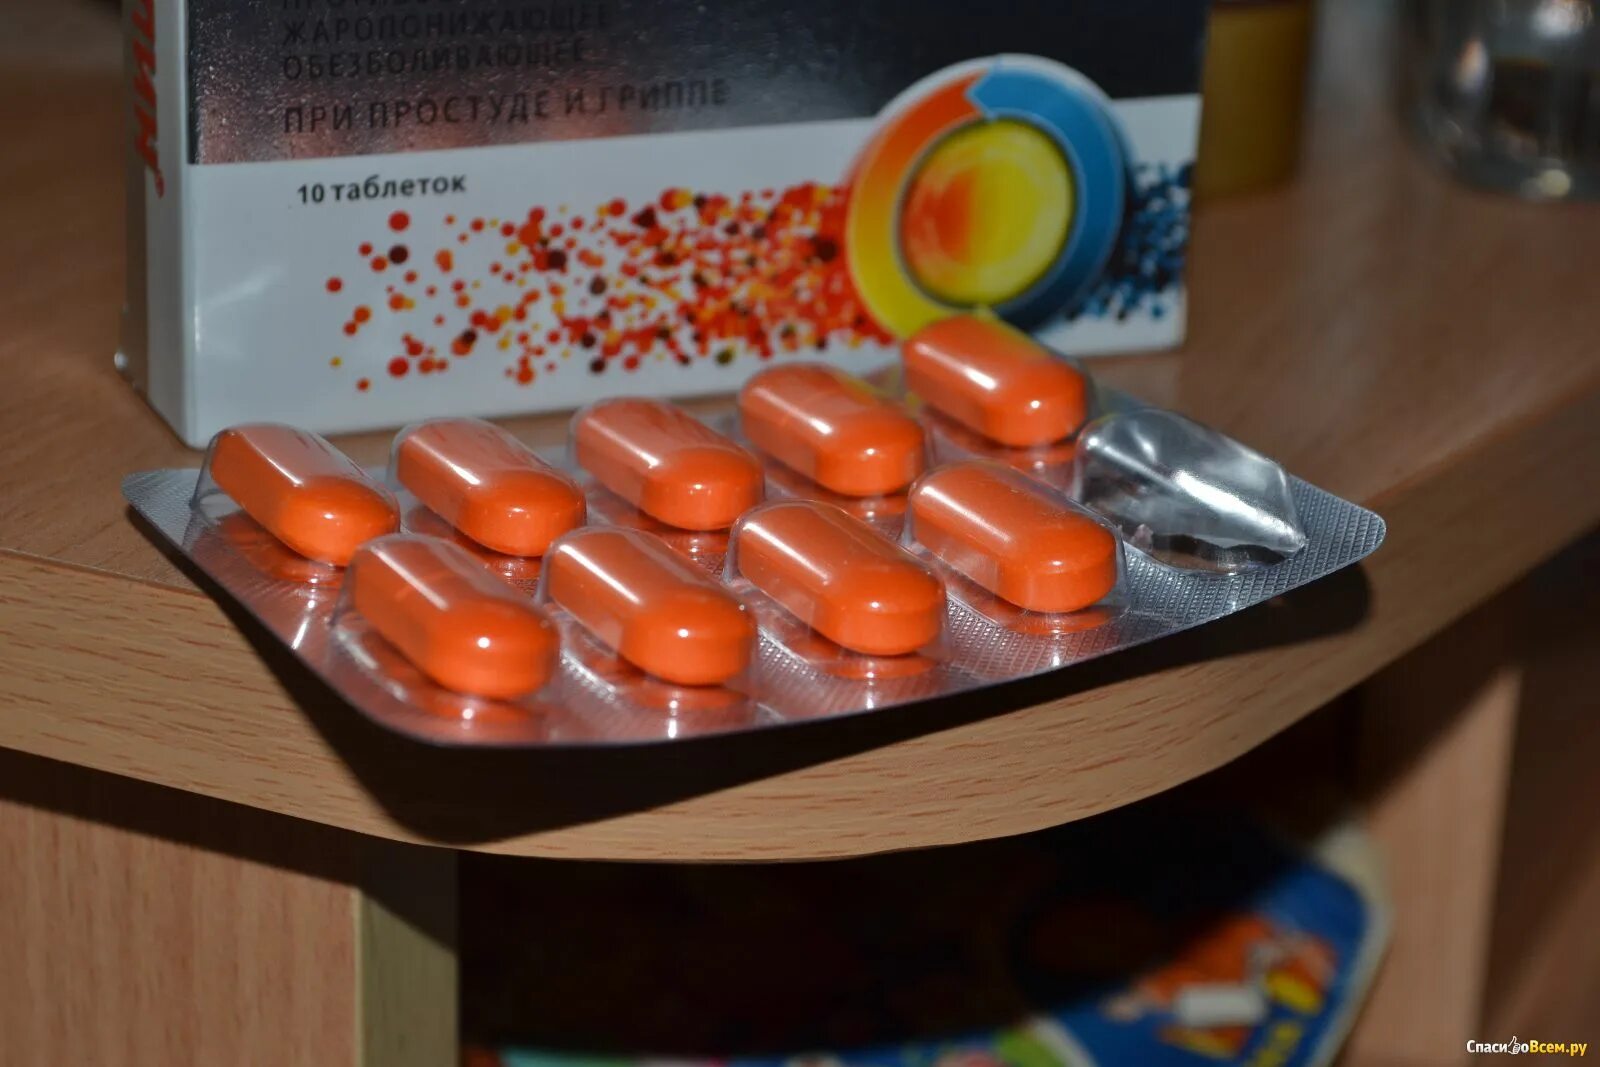 Таблетки от головы недорогие но эффективные. Ибуклин оранжевые капсулы. Ибупрофен оранжевые таблетки. Таблетки от головной боли. Оранжевая таблетка обезболивающее.